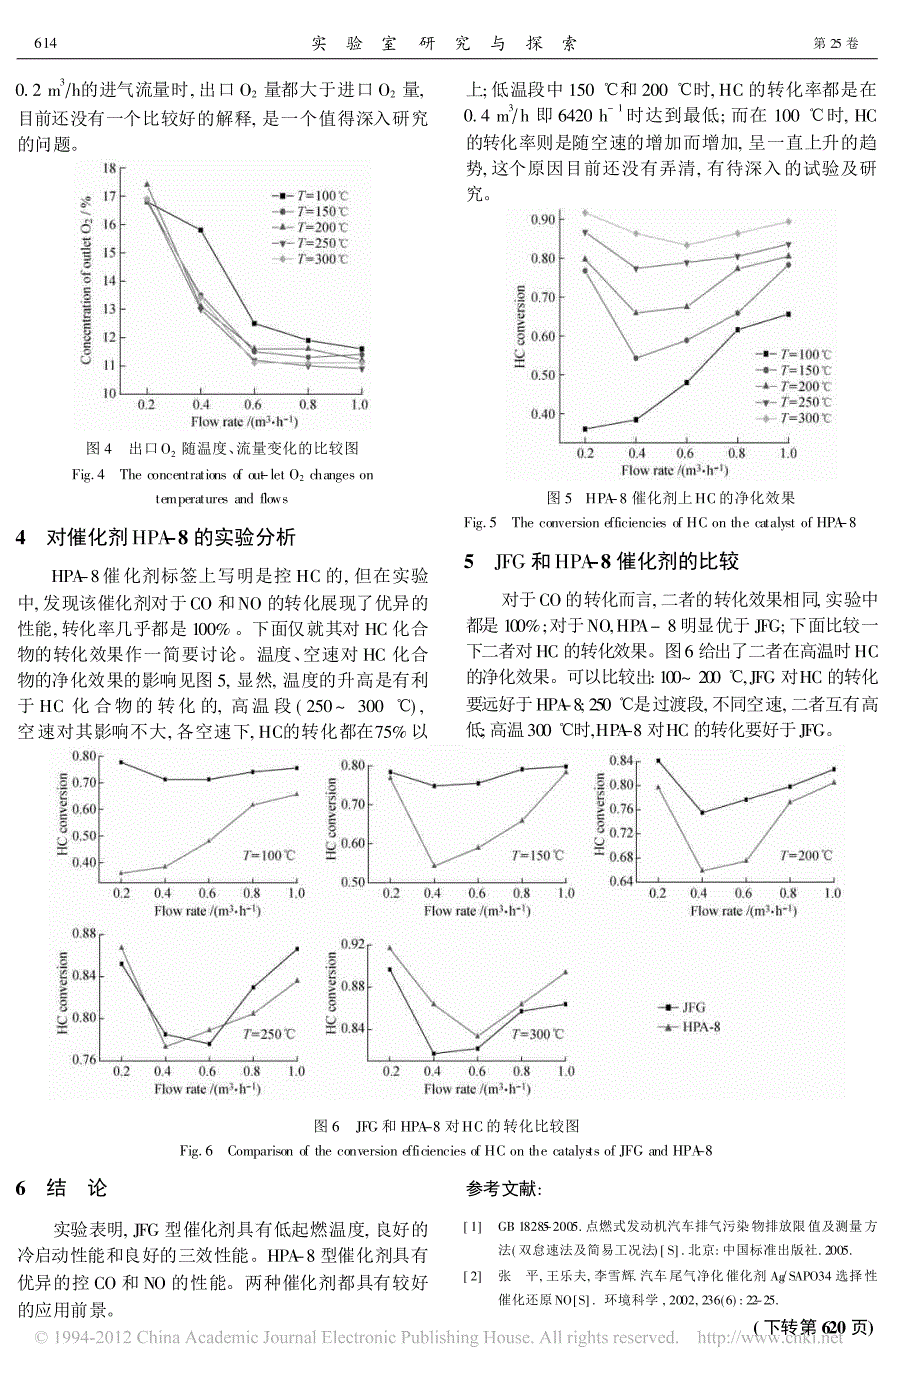 汽车尾气催化处理实验研究_翁棣_第4页